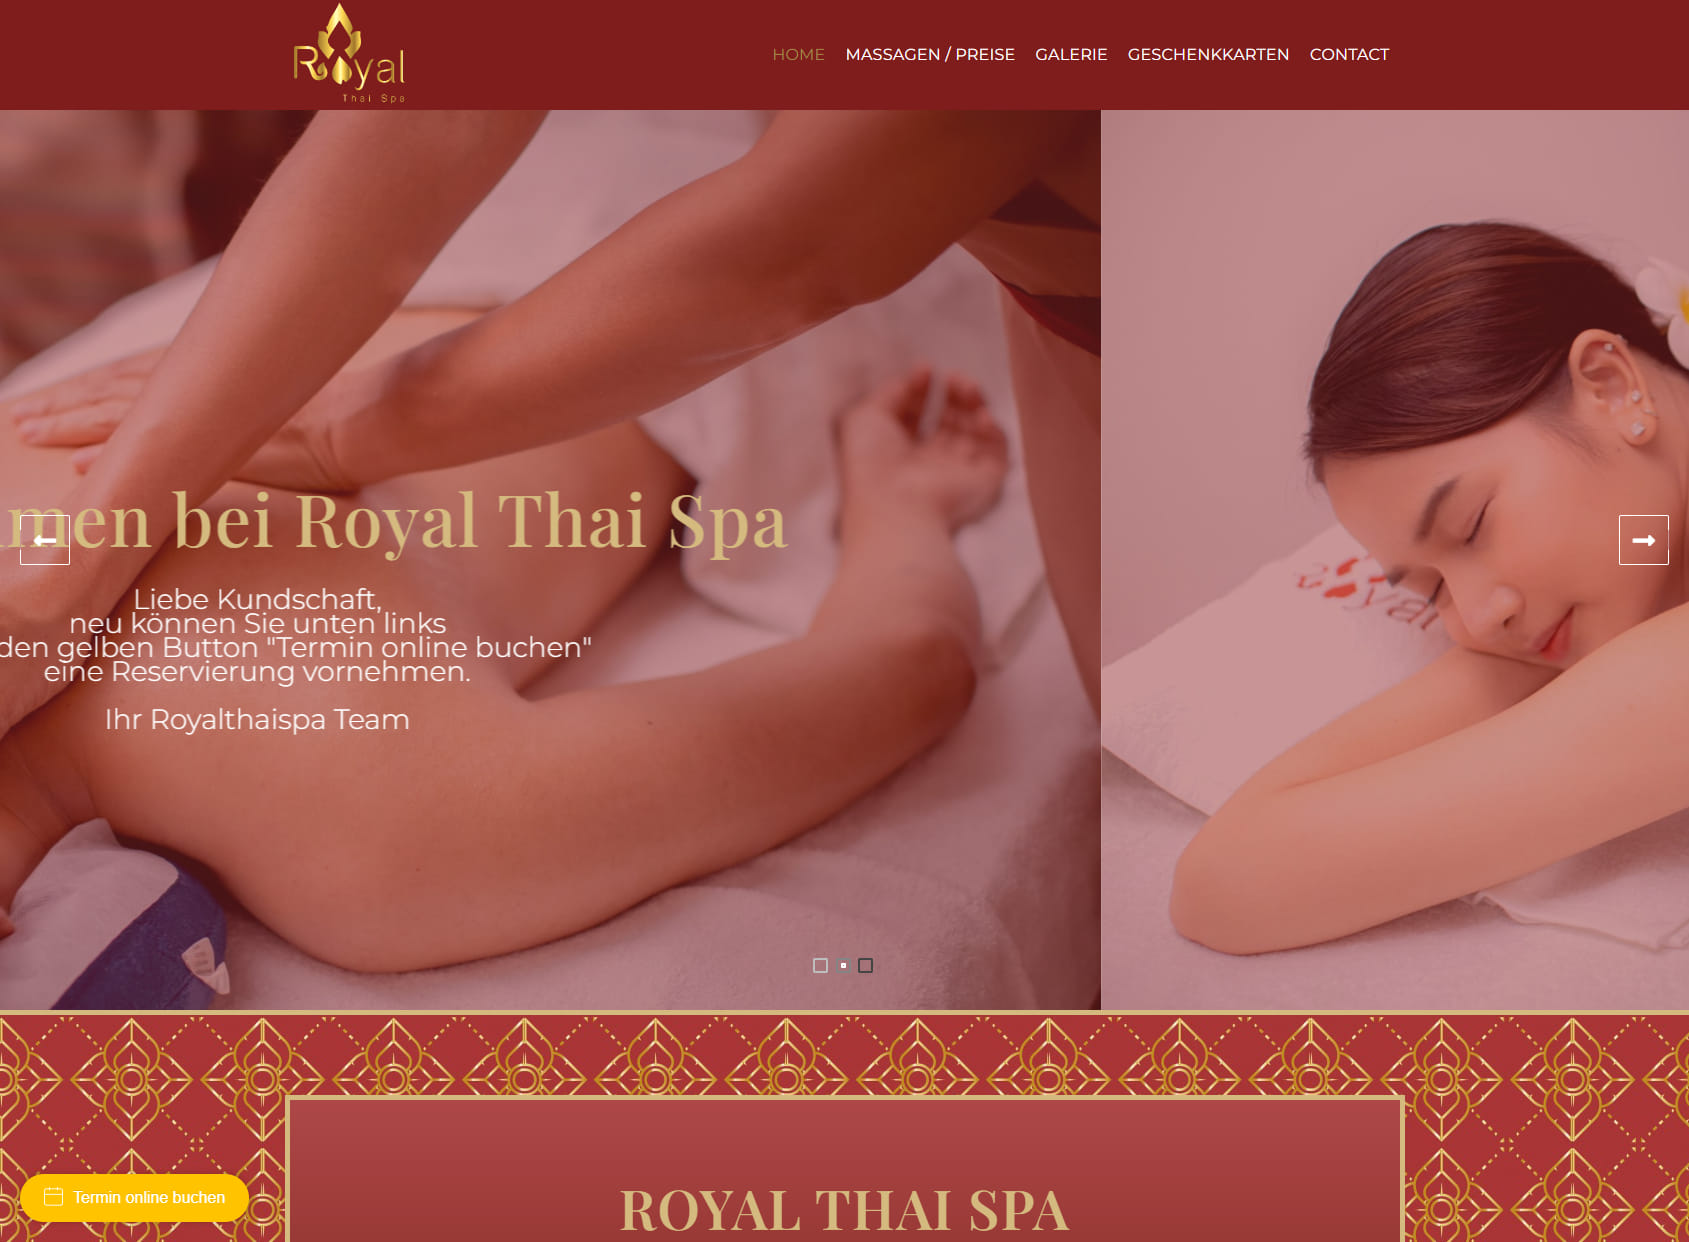 Royal Thai Spa